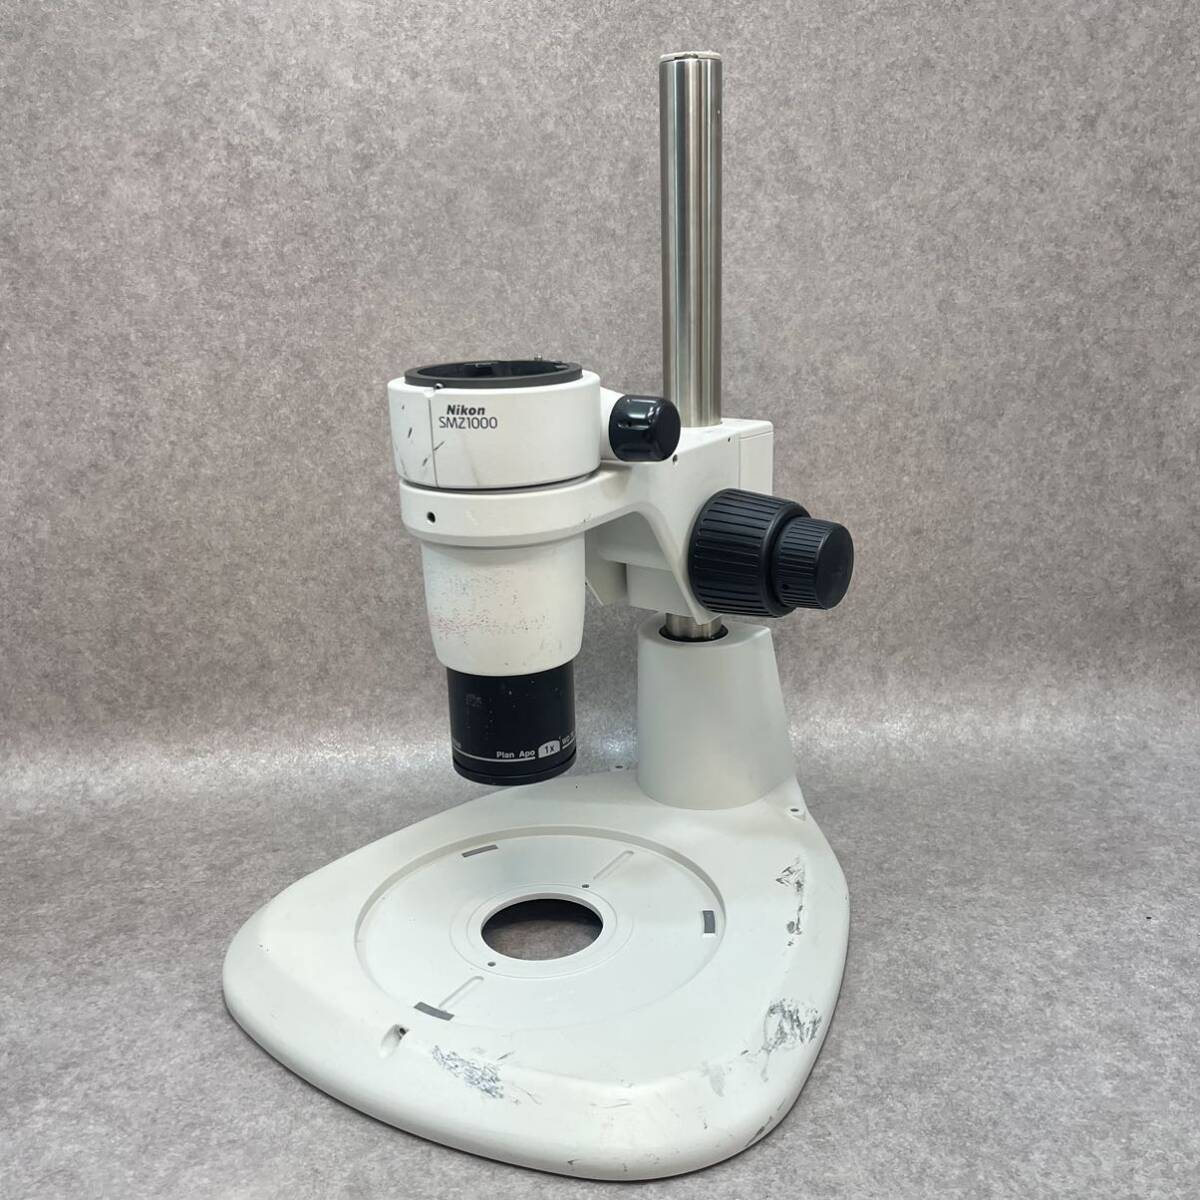 B1003* система . глаз реальный body микроскоп Nikon SMZ1000 / Nikon система реальный body микроскоп для на предмет линзы Plan APO 1x WD 70